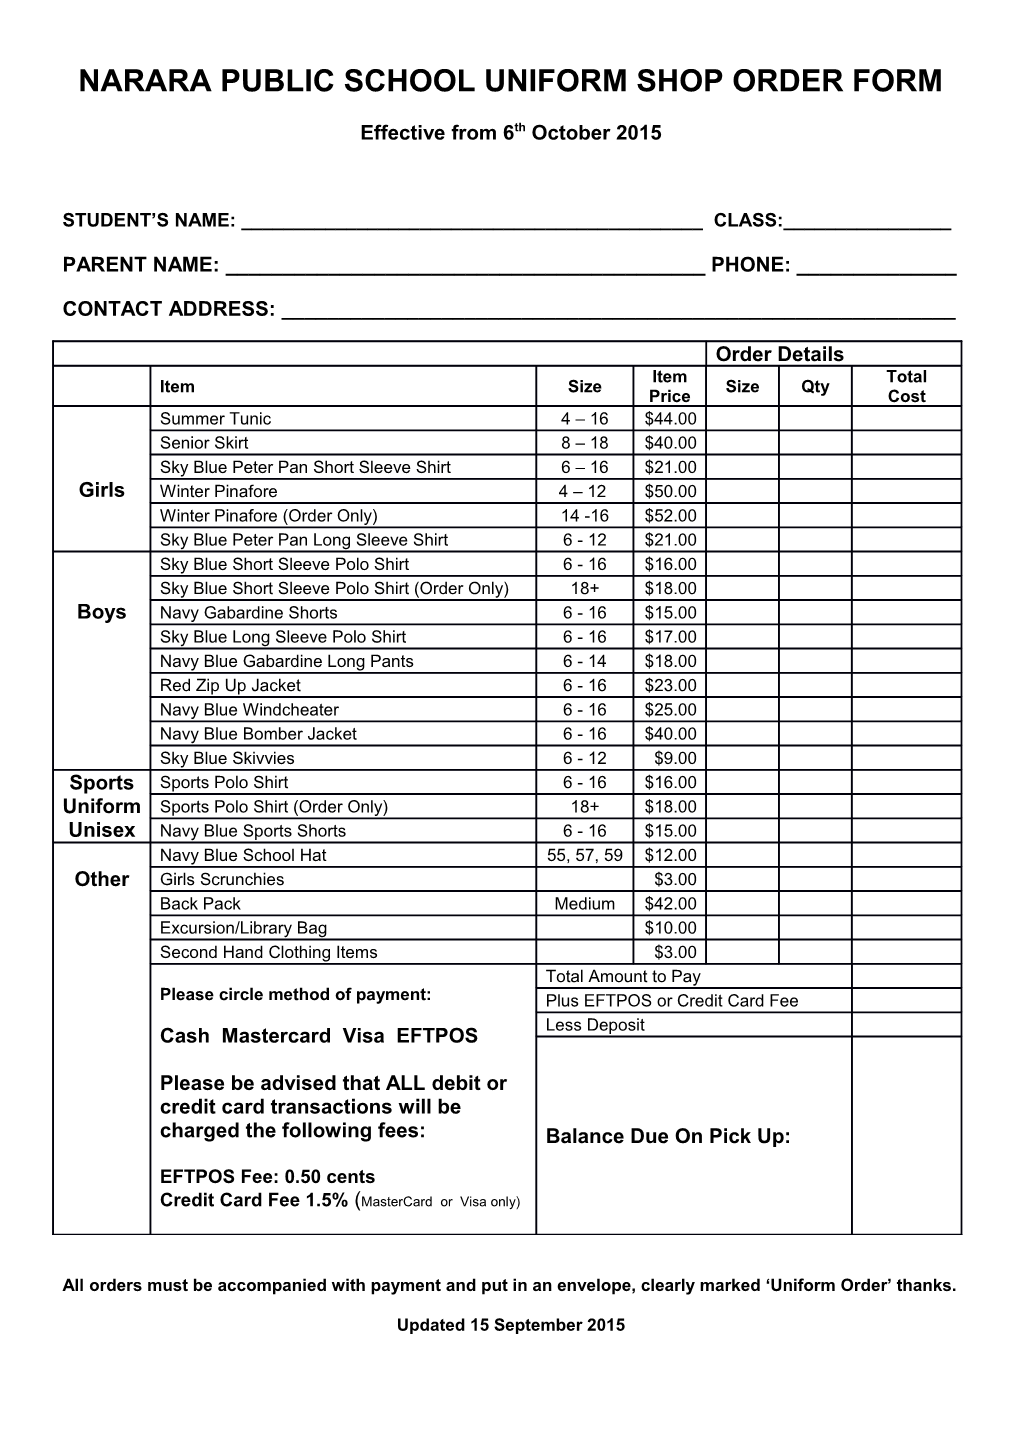 Narara Public School Uniform Shop Order Form